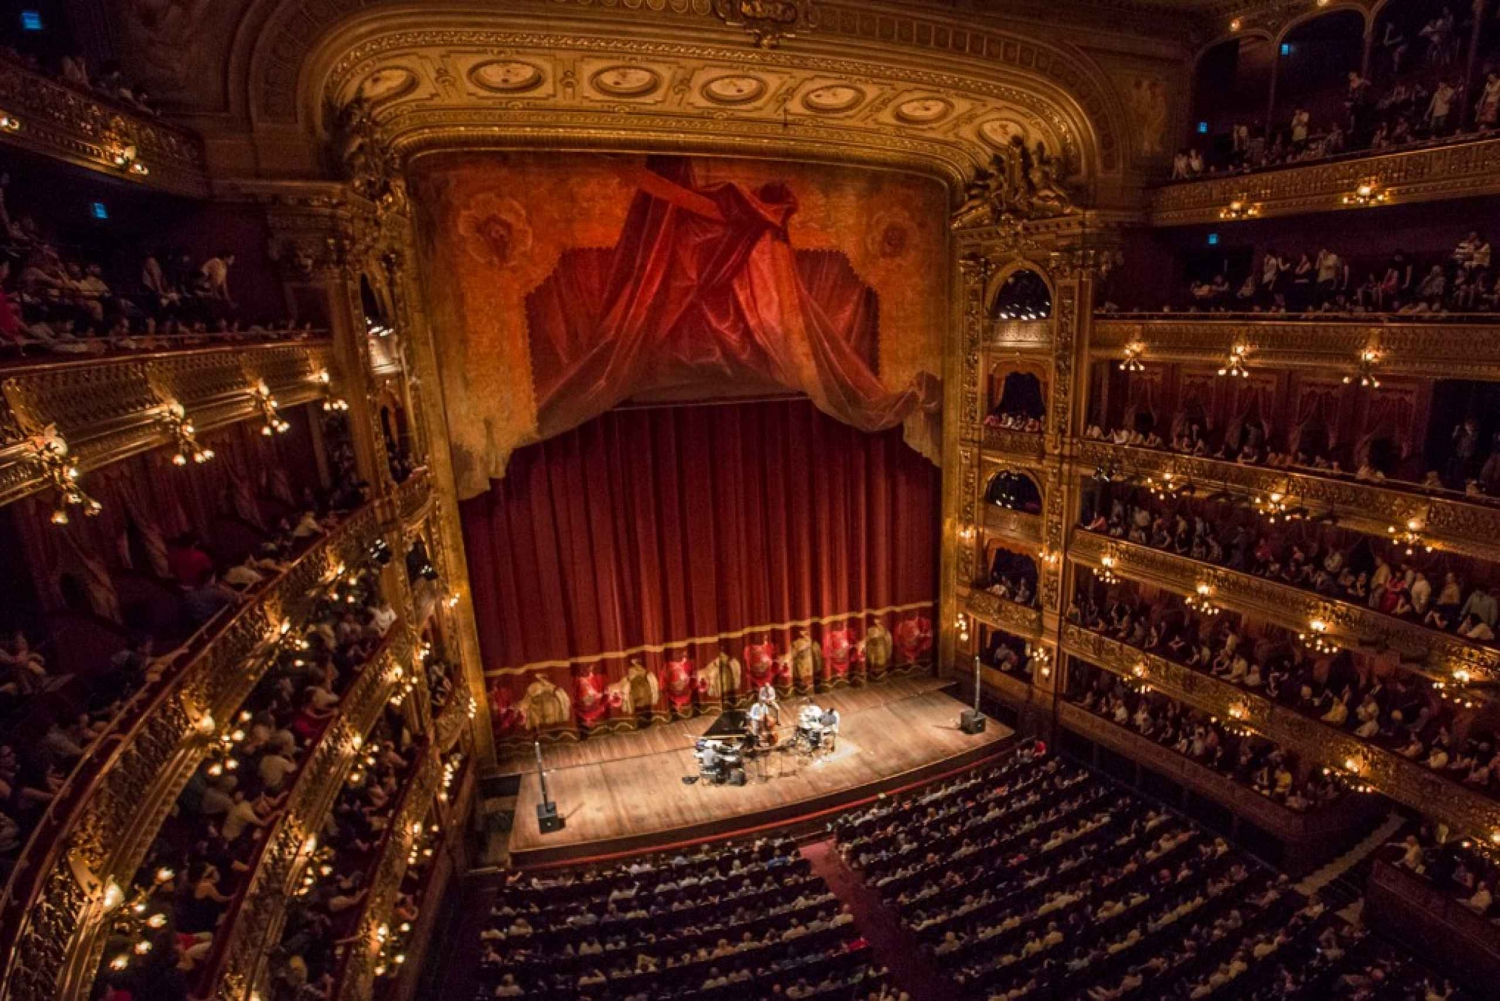 Buenos Aires : Visite guidée du Teatro Colon